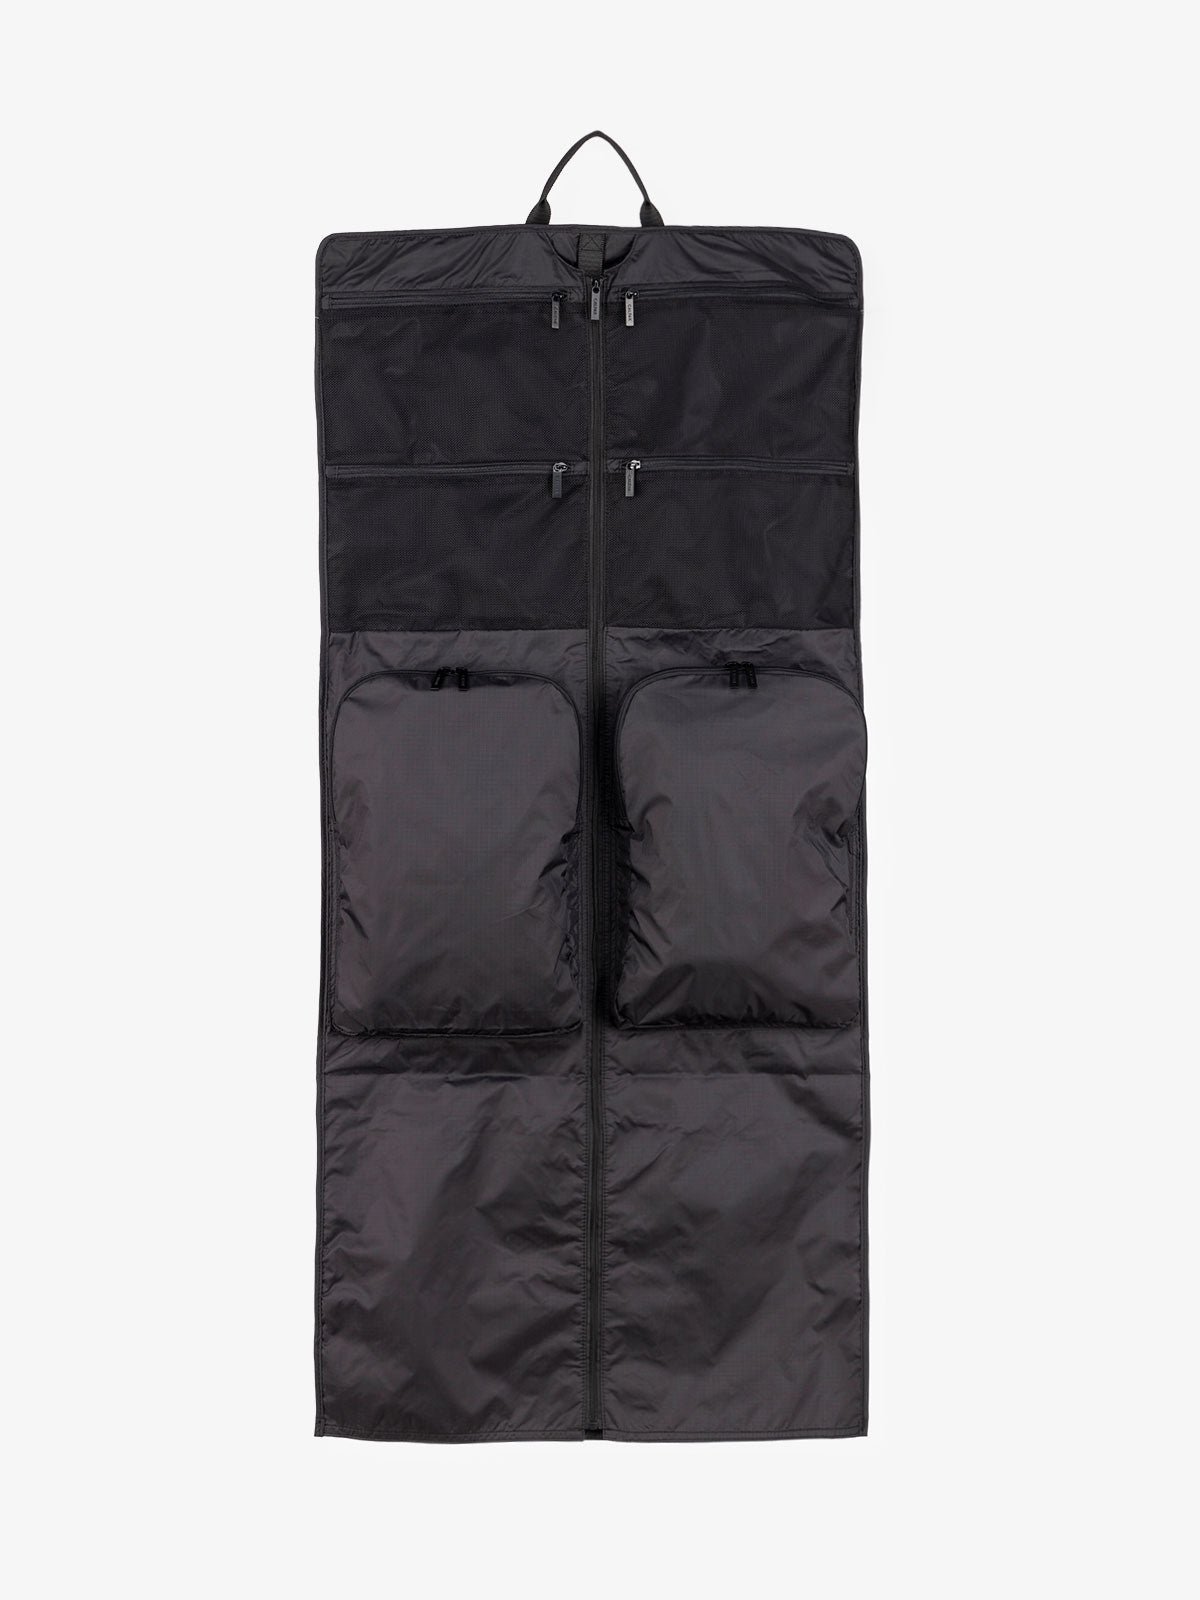 CALPAK foldable garment bag for storage with shoulder strap